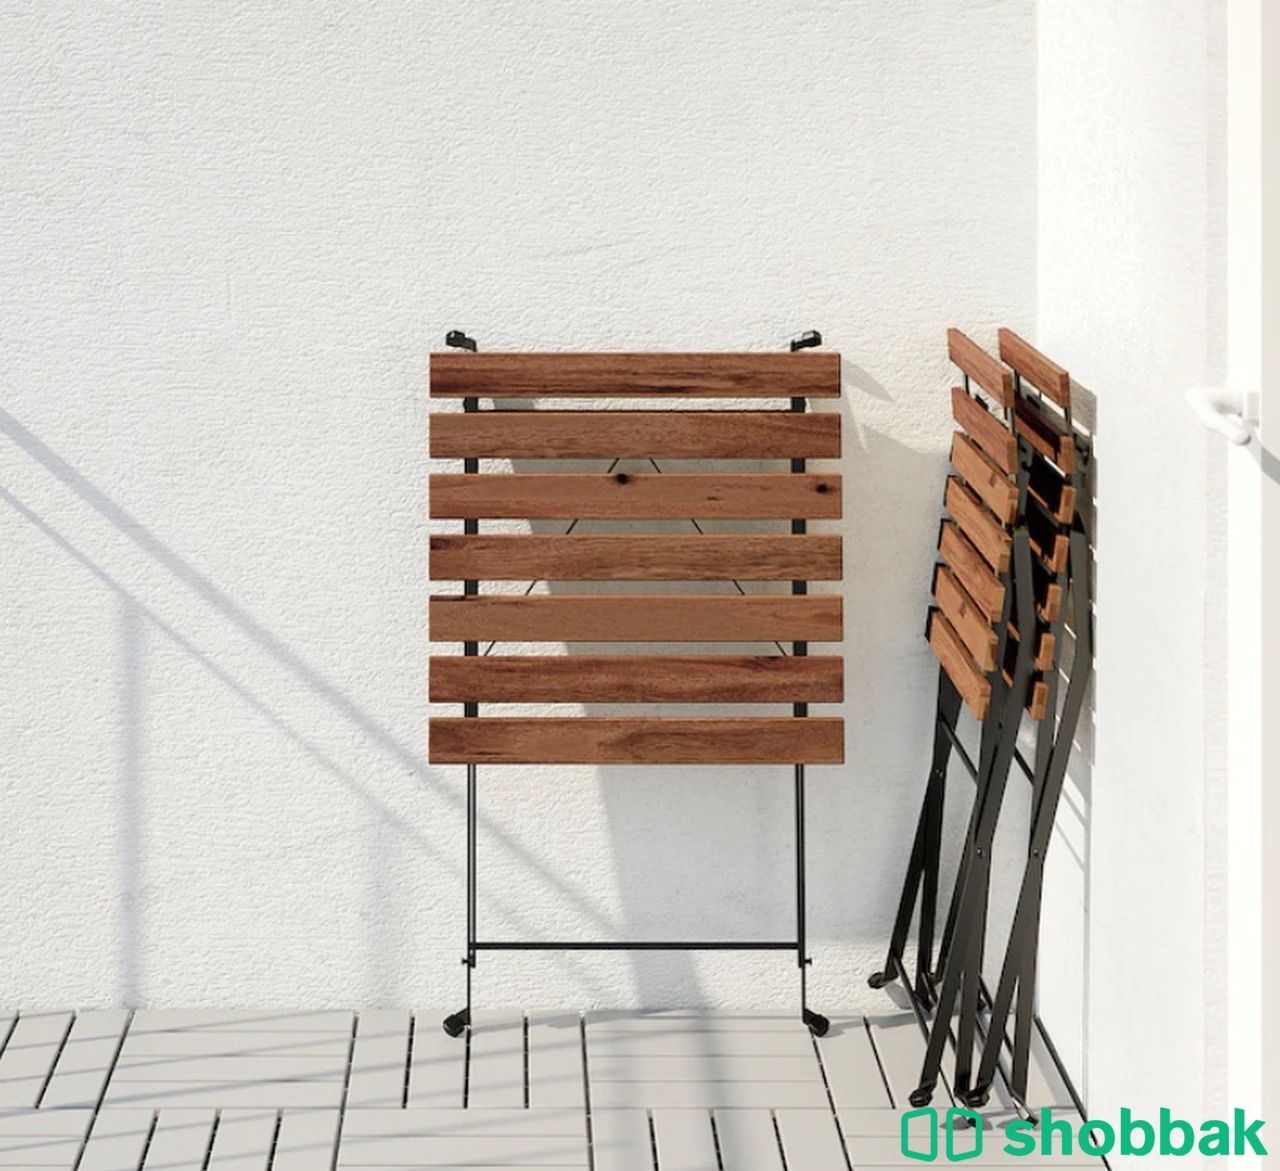 كرسيين وطاولة خارجية خشب Two chairs and a wooden table Shobbak Saudi Arabia